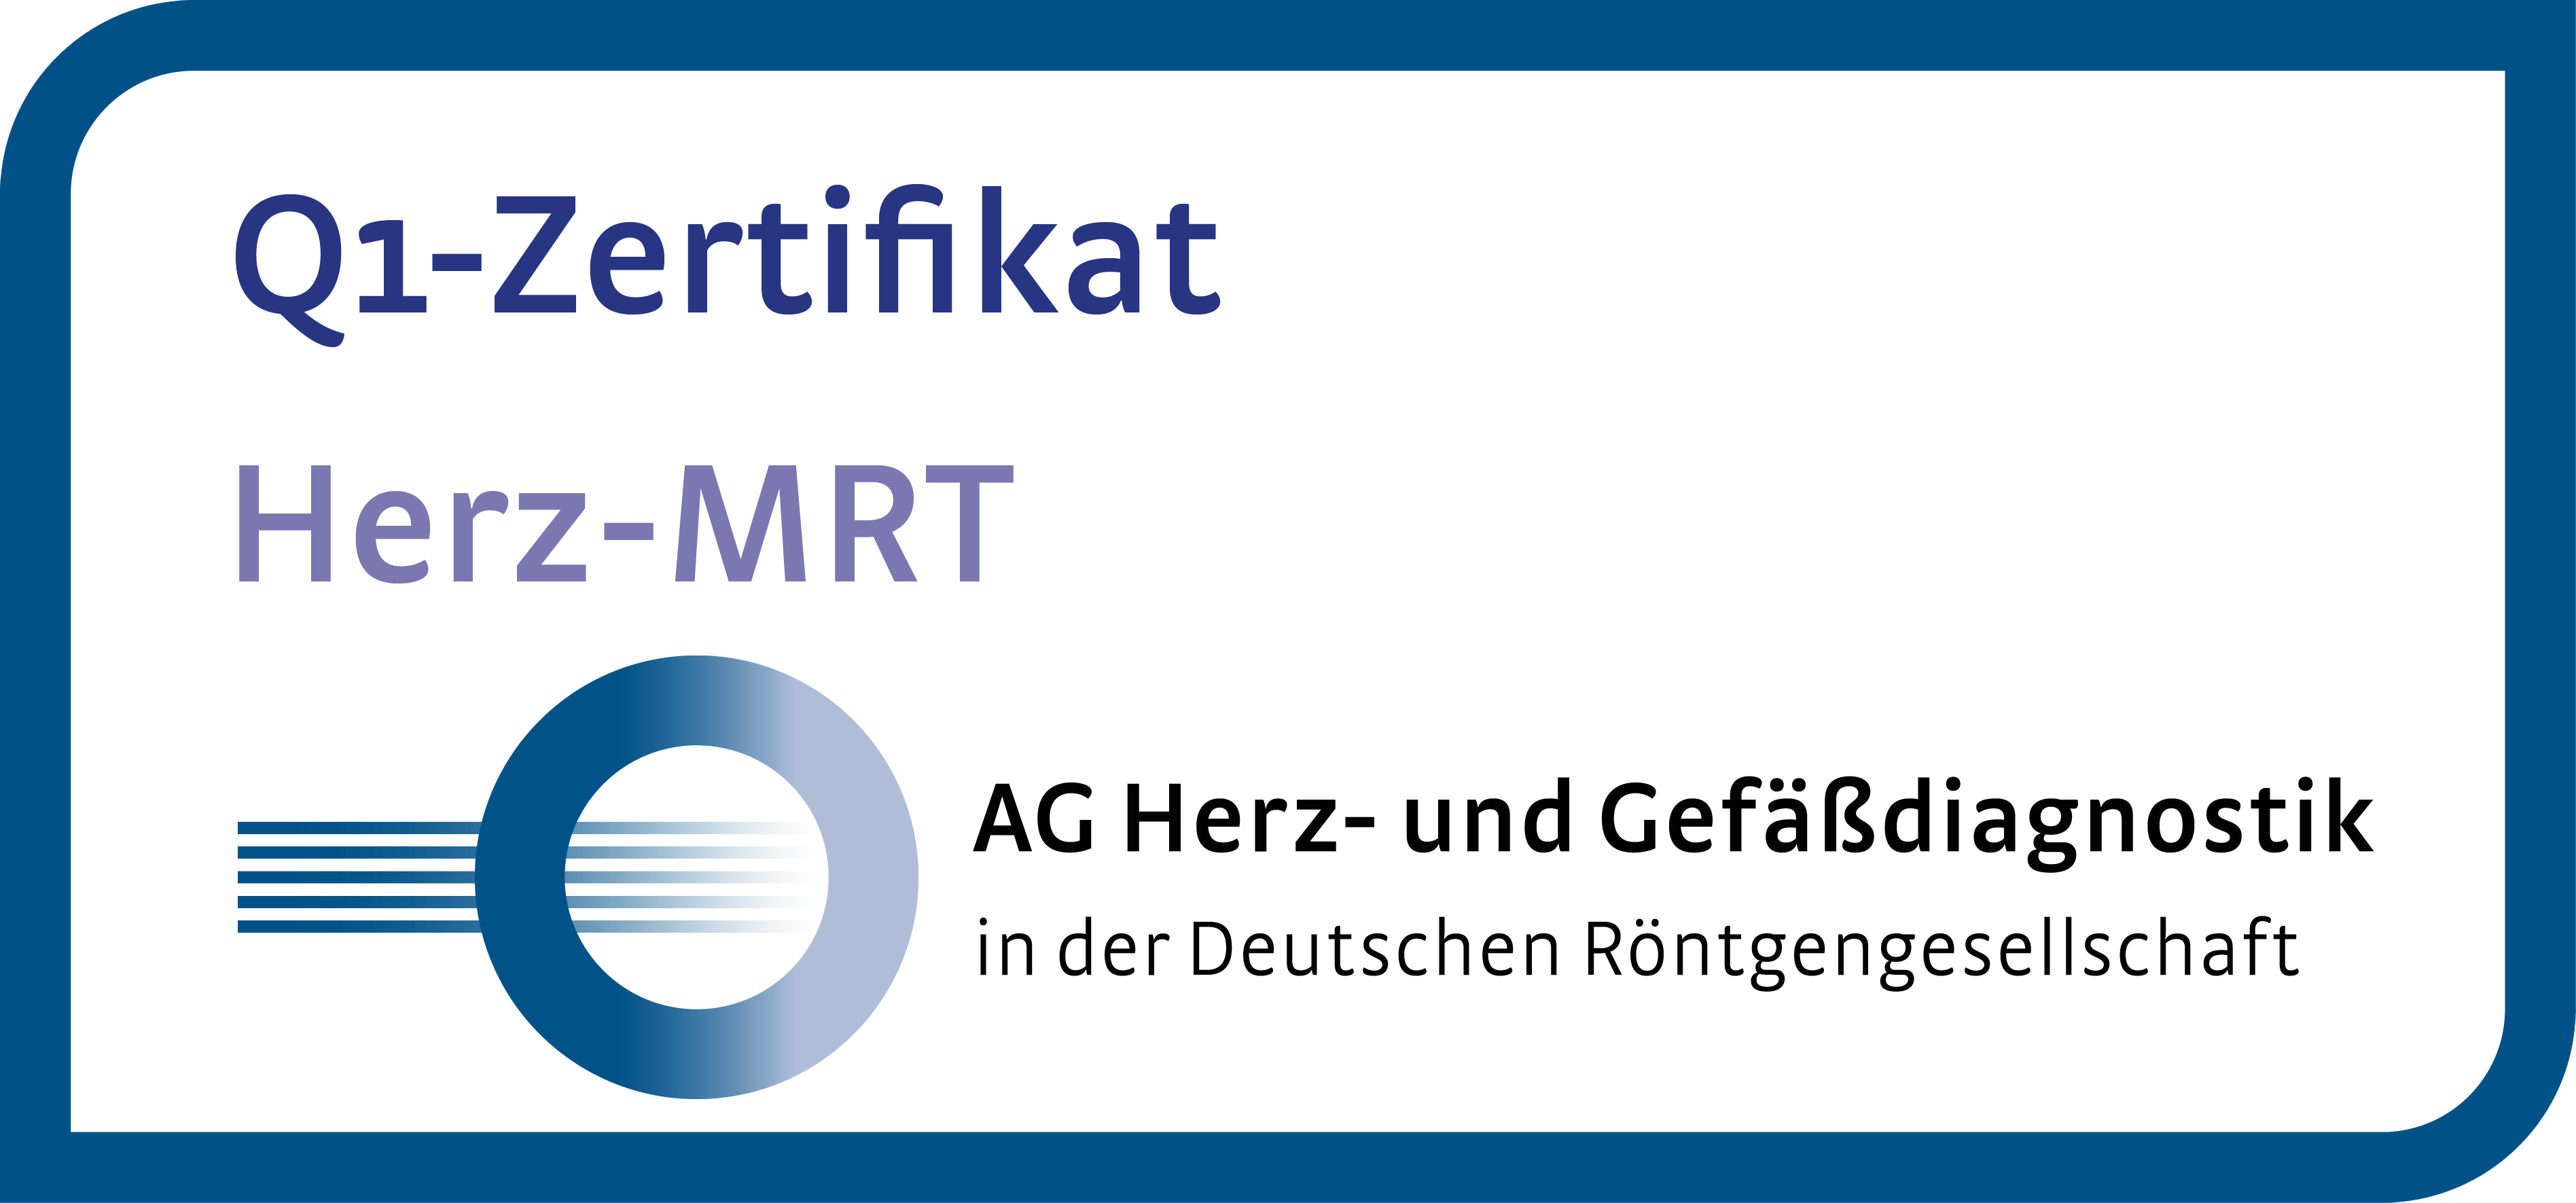 Q1 Zertifikat Herz MRT AG Herz- und Gefäßdiagnostik in der Deutschen Röntgengesellschaft